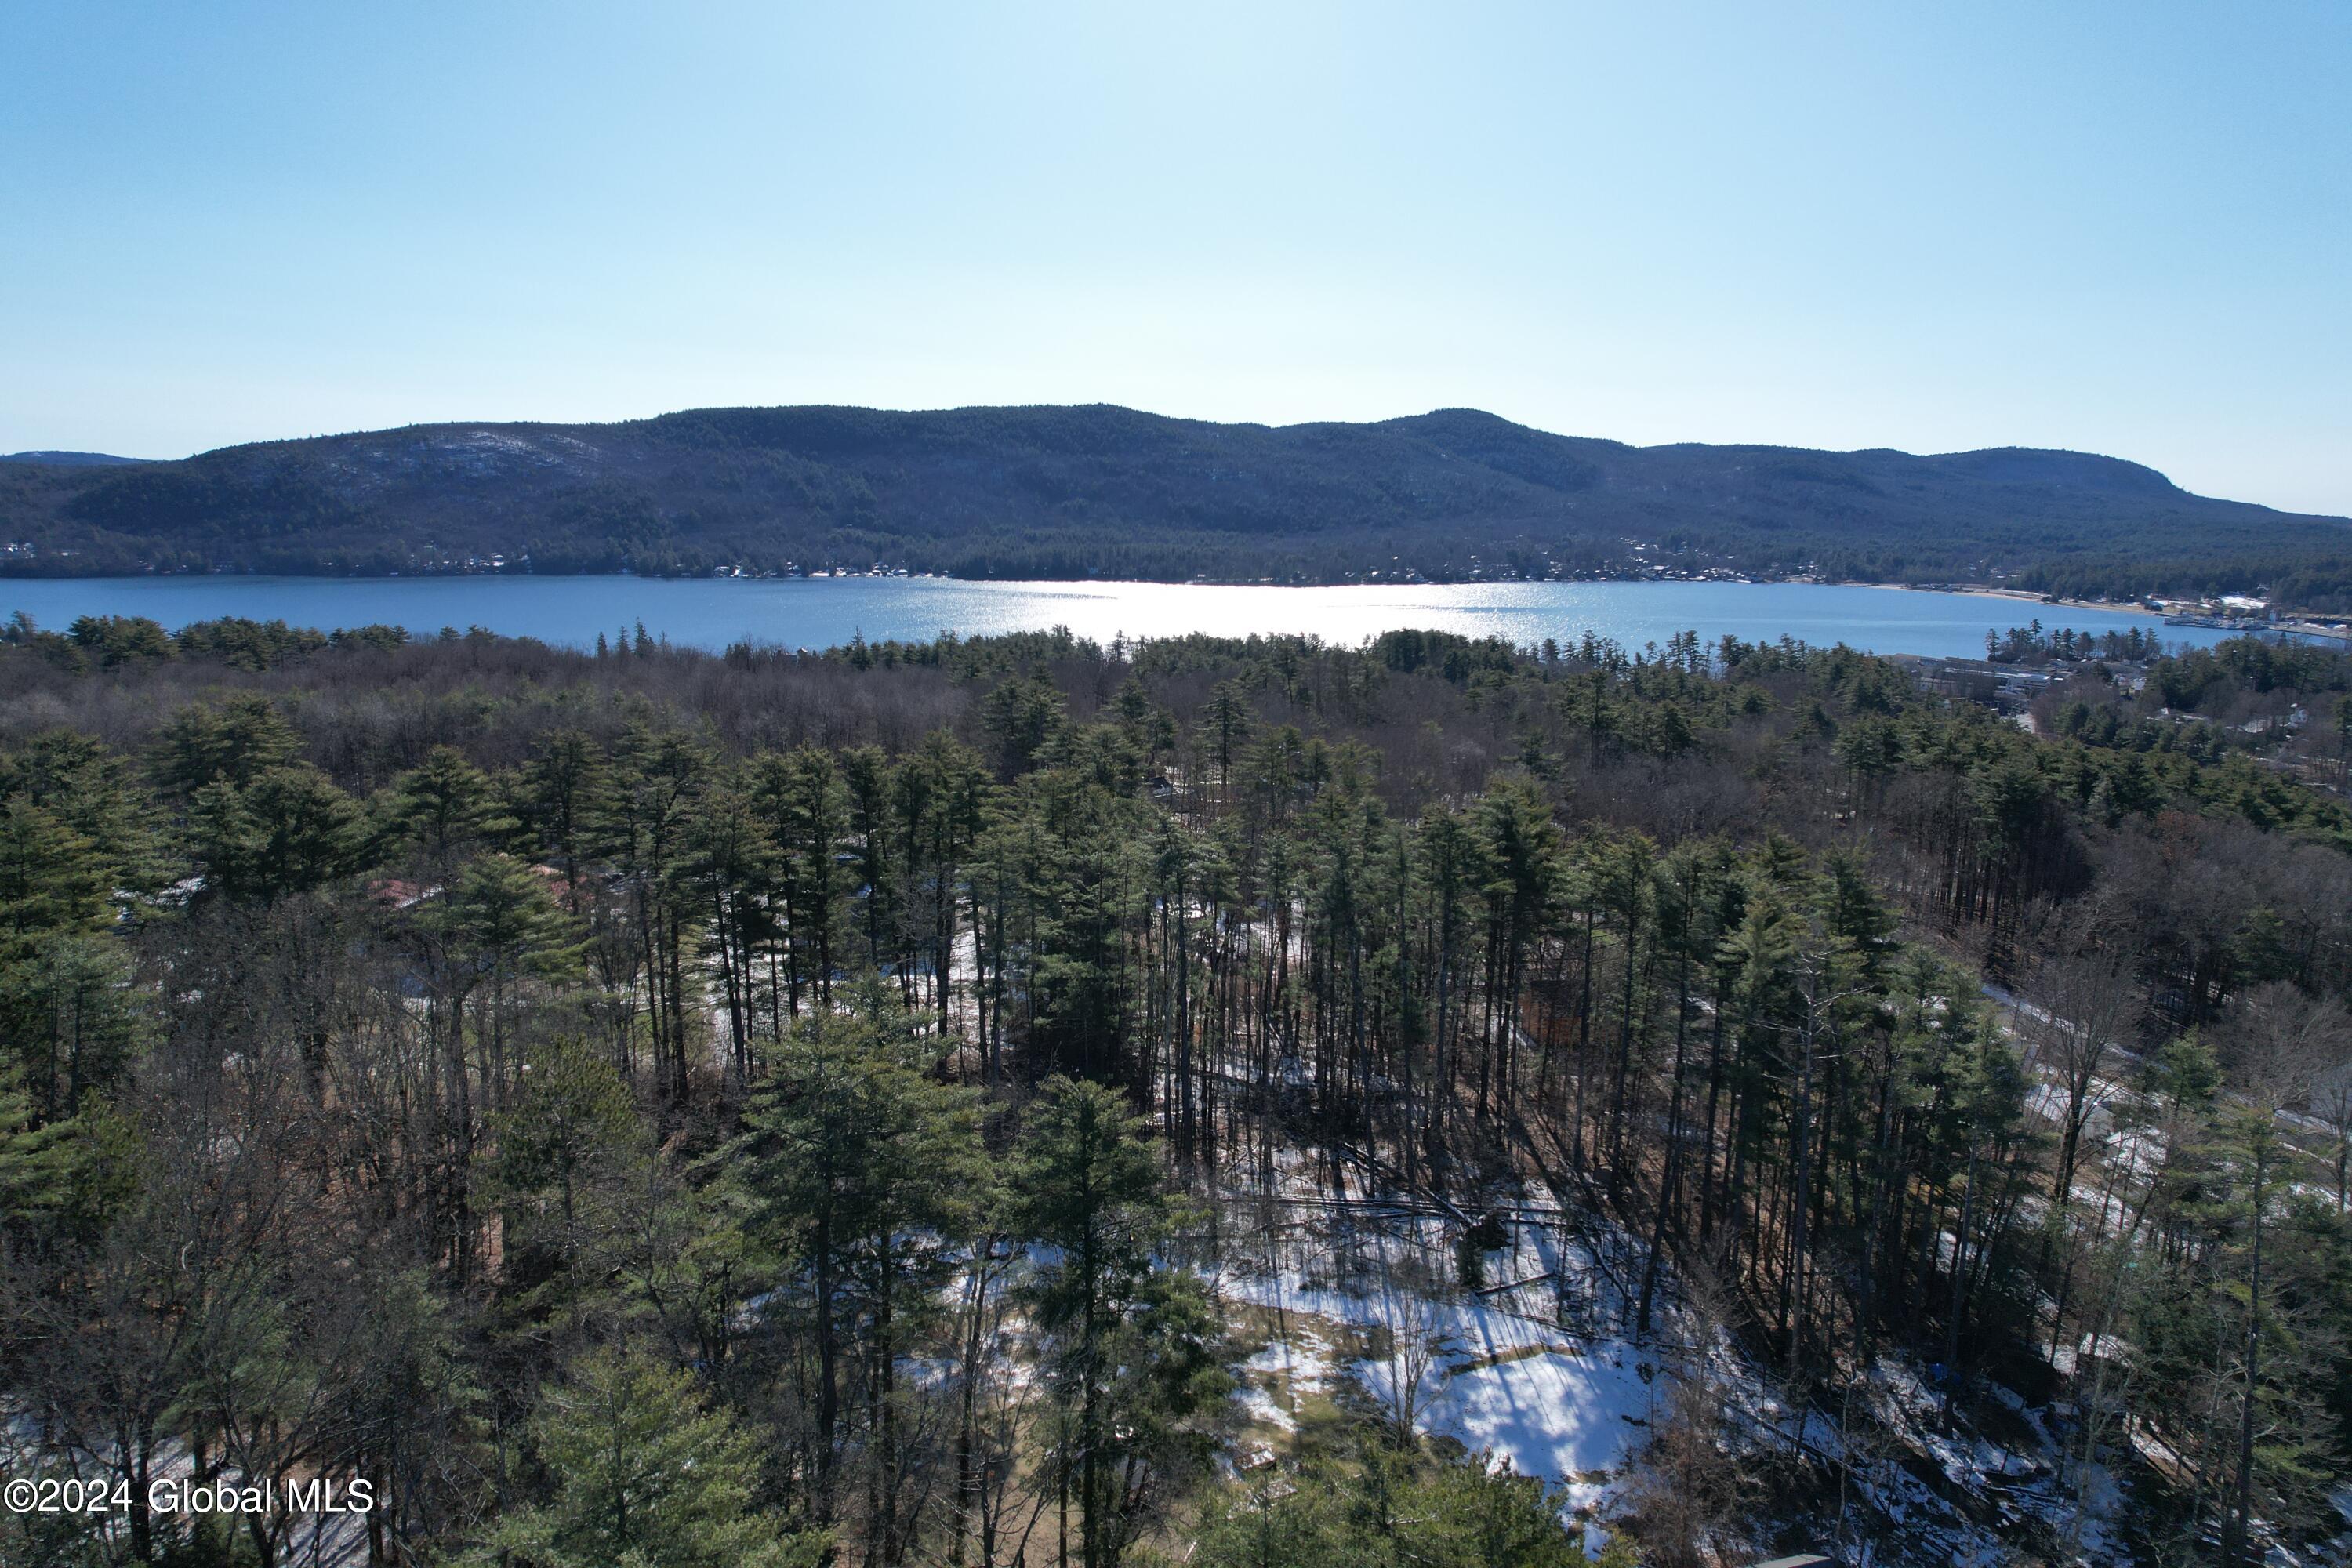 View Lake George, NY 12845 land